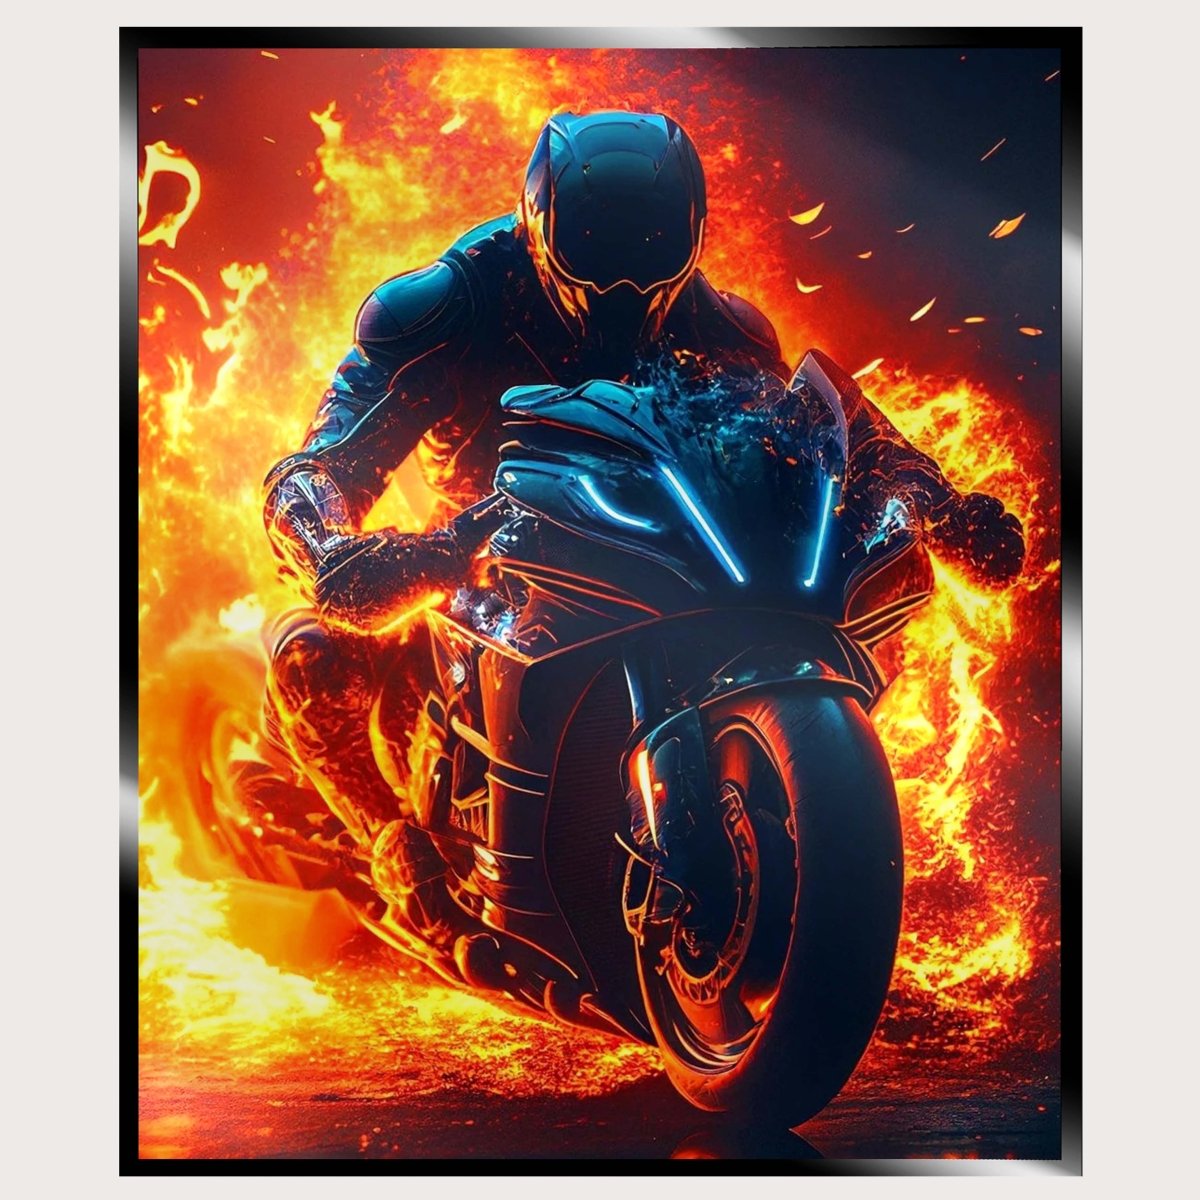 Illuminated Wall Art - Flaming Motorcycle Rider - madaboutneon